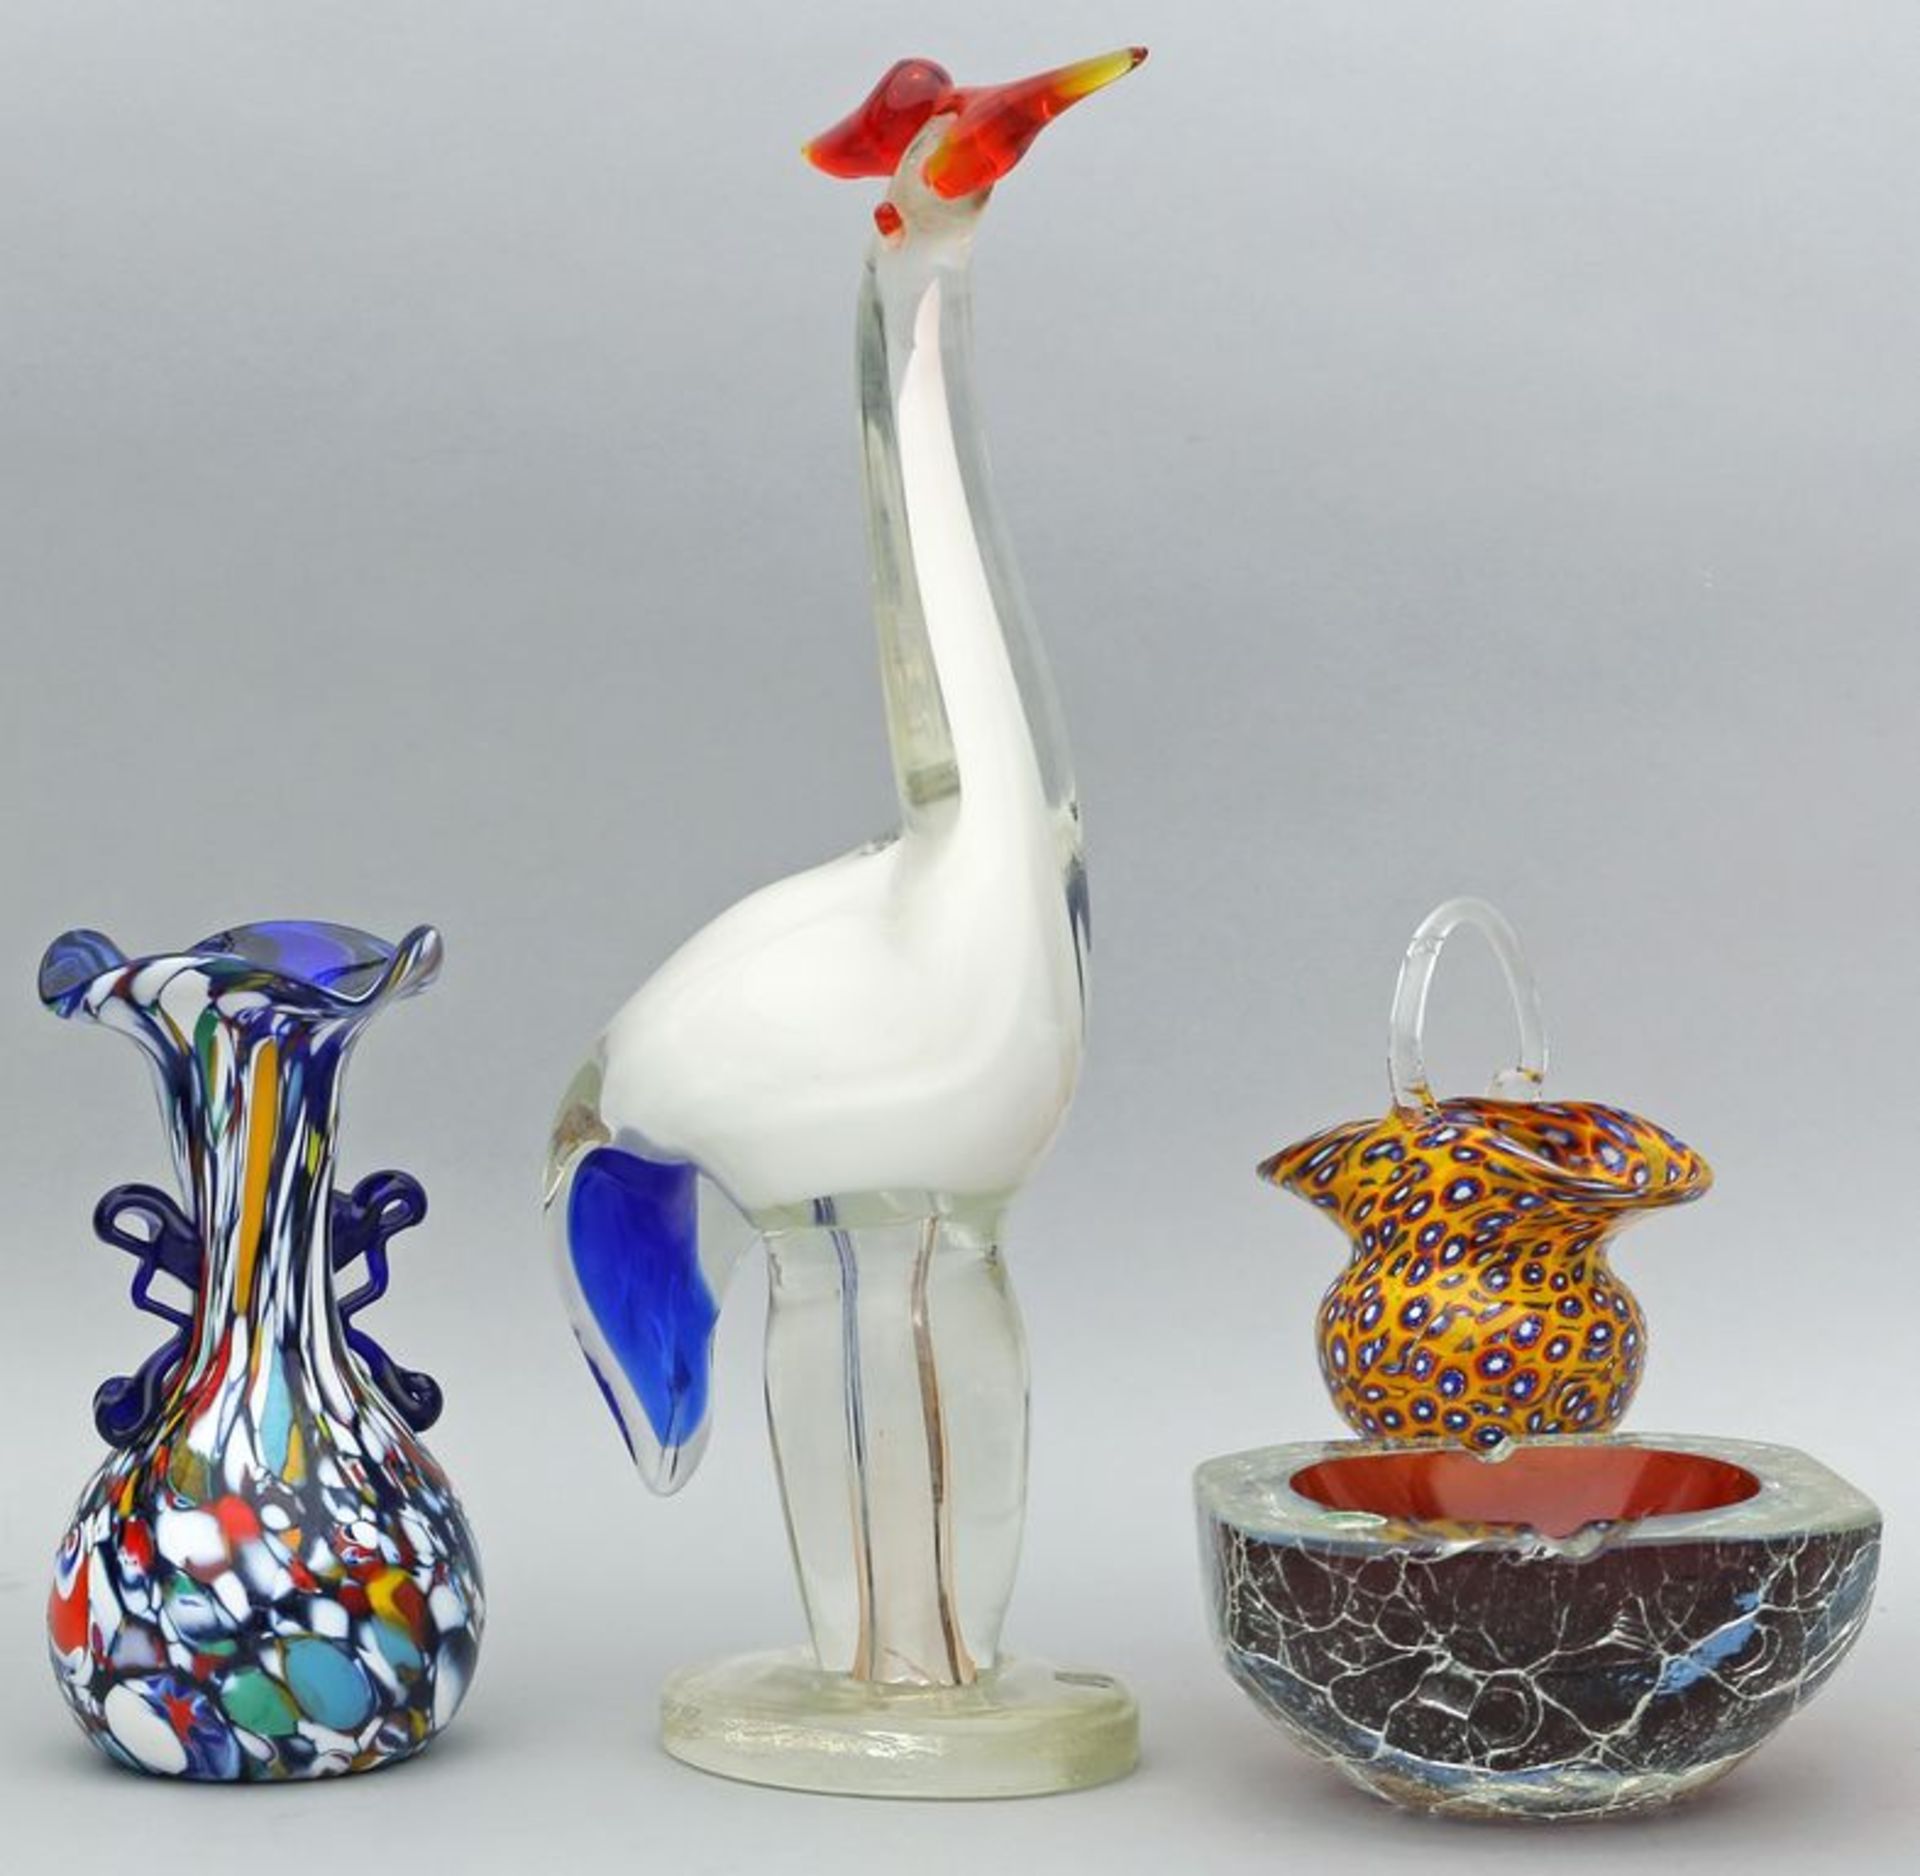 Vase, Henkelkörbchen, Ascher und Vogelskulptur. Farbloses Glas/Kristall mit verschiedenfarbigen Ein-